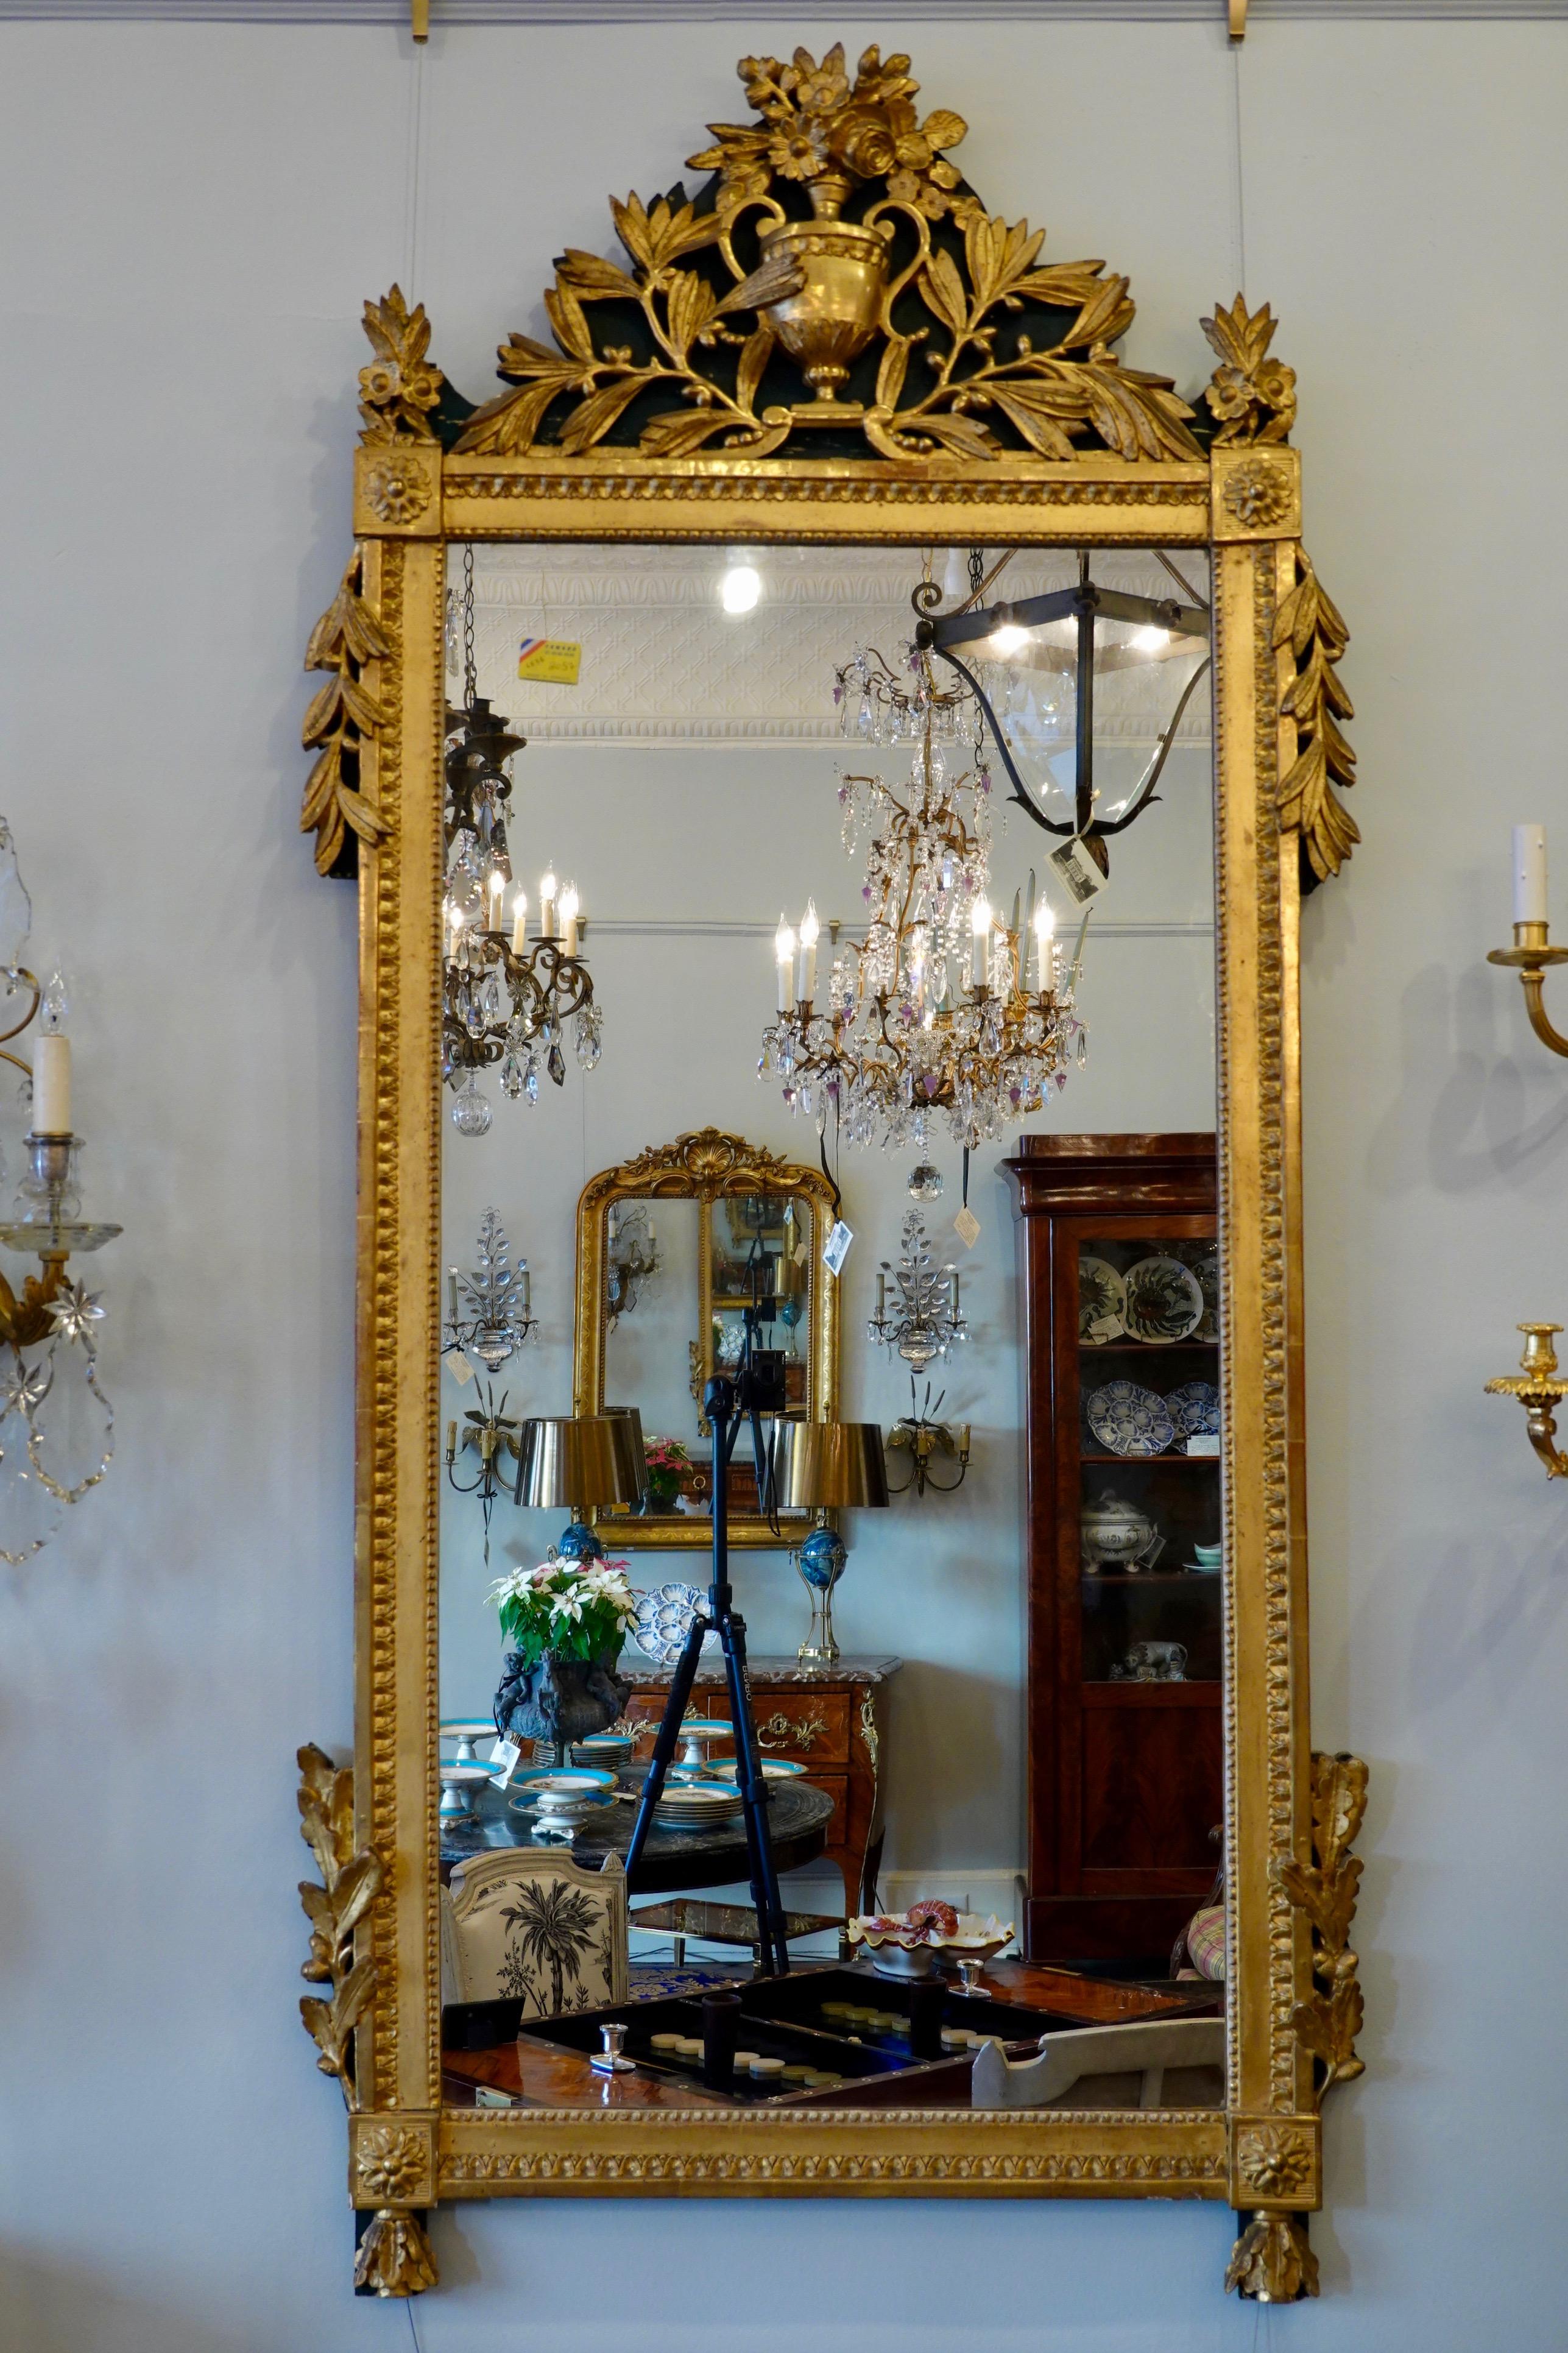 Großer französischer Trumeau-Spiegel aus bemaltem und vergoldetem Holz, mit schöner, originaler Vergoldung, detailreicher neoklassizistischer Dekoration (Periode Ludwigs XVI., um 1780); Glas ist später. Die Kartusche ist mit einer Urne mit